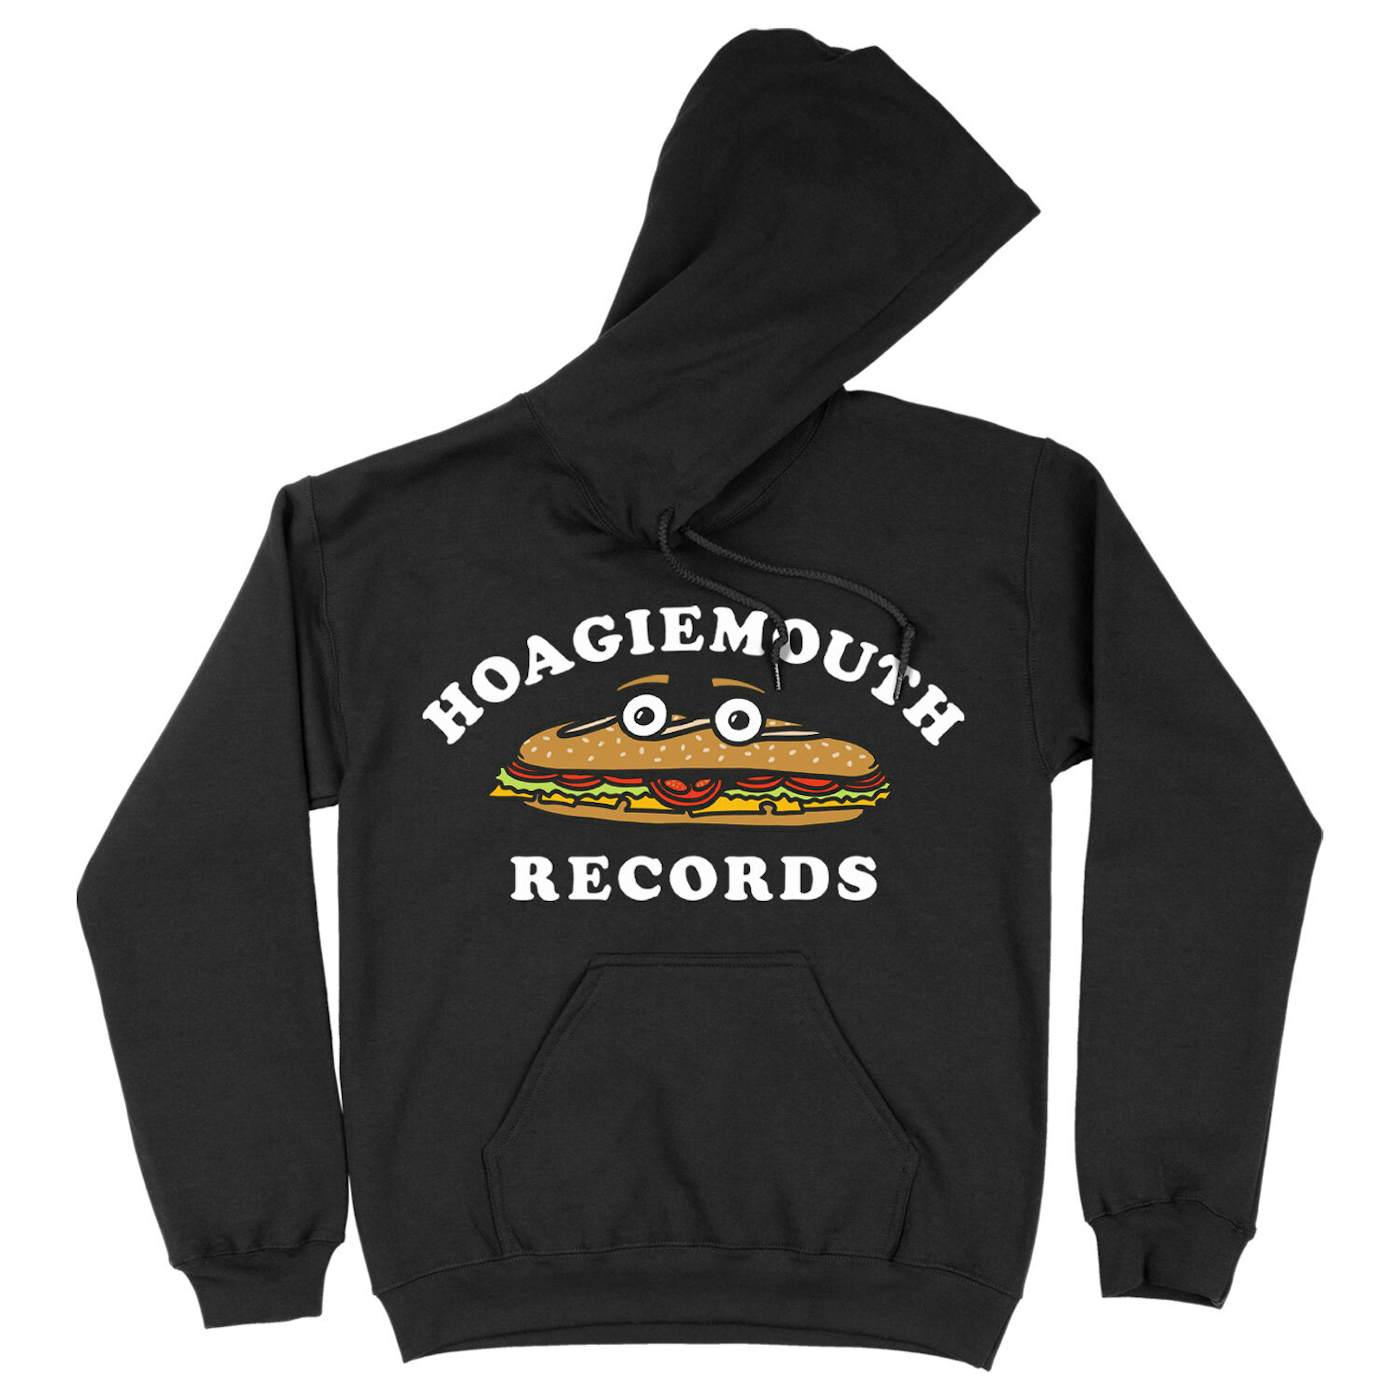 Amos Lee Hoagiemouth Records Black Hoodie